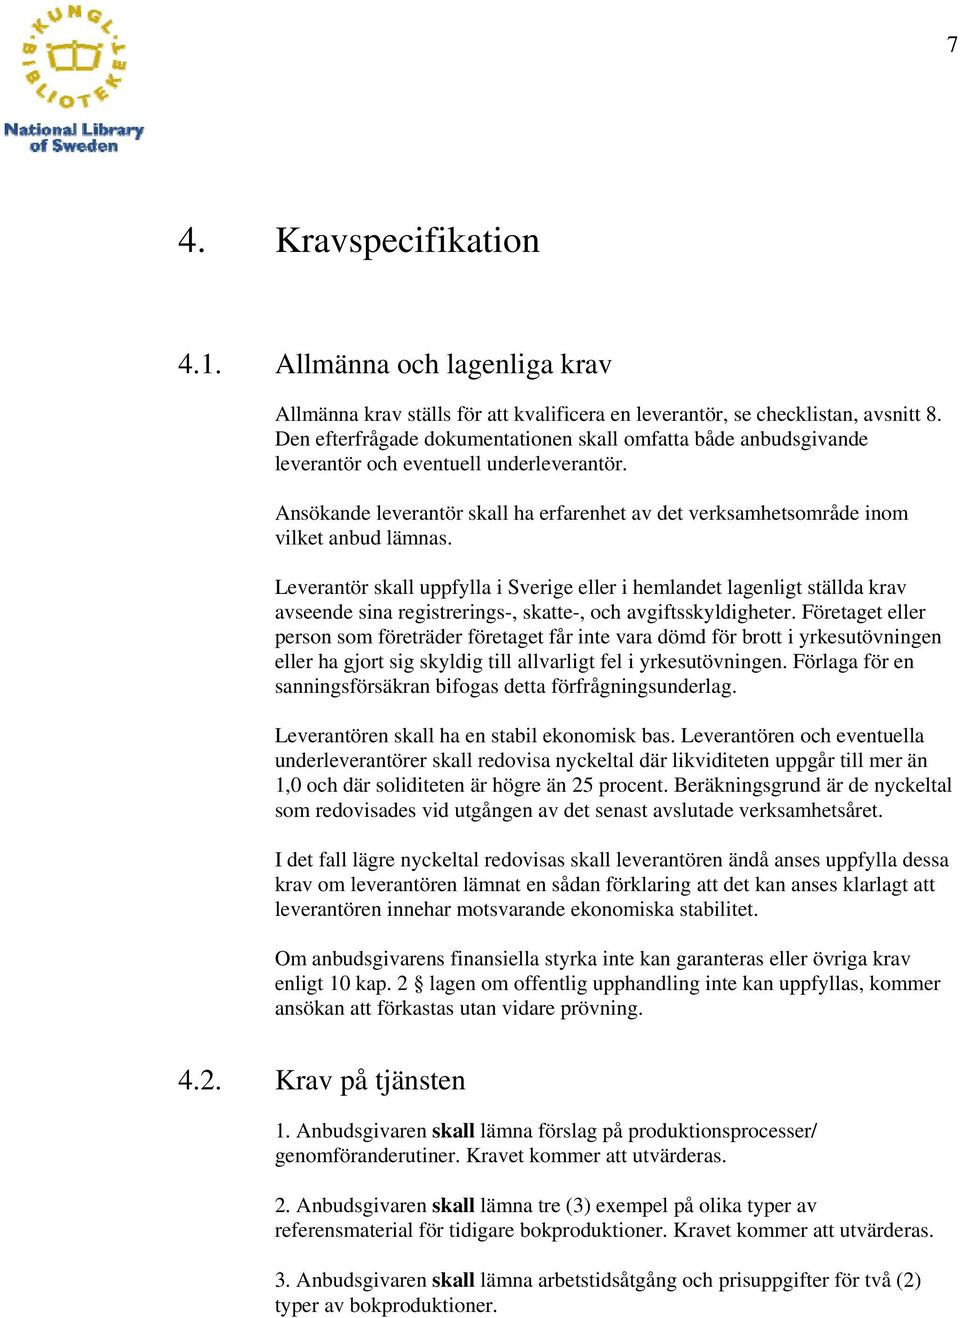 Leverantör skall uppfylla i Sverige eller i hemlandet lagenligt ställda krav avseende sina registrerings-, skatte-, och avgiftsskyldigheter.